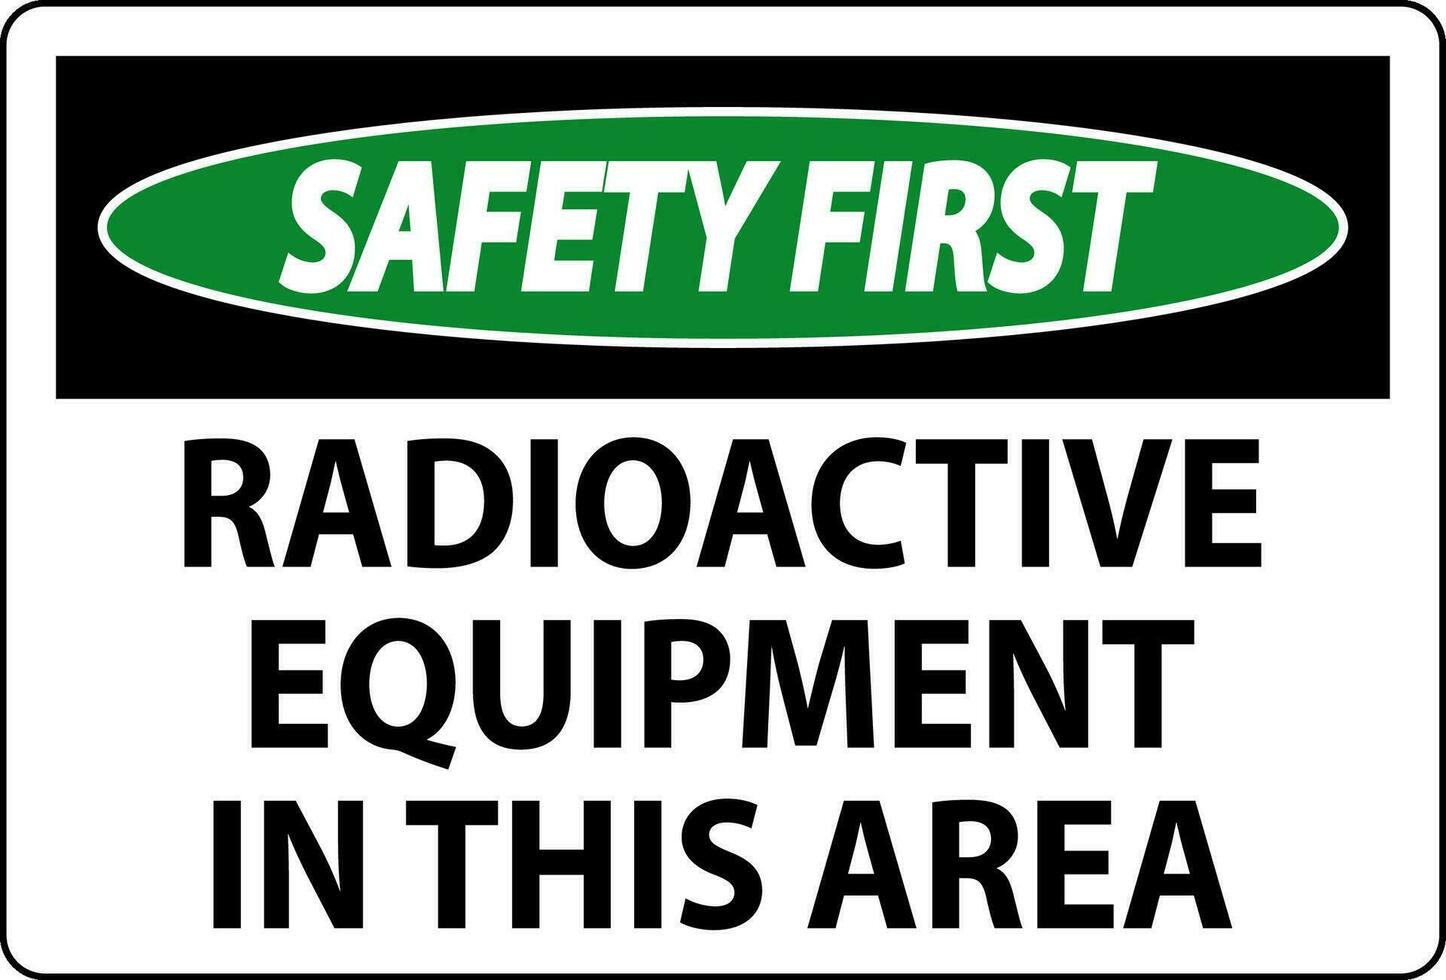 Sicherheit zuerst Zeichen Vorsicht radioaktiv Ausrüstung im diese Bereich vektor